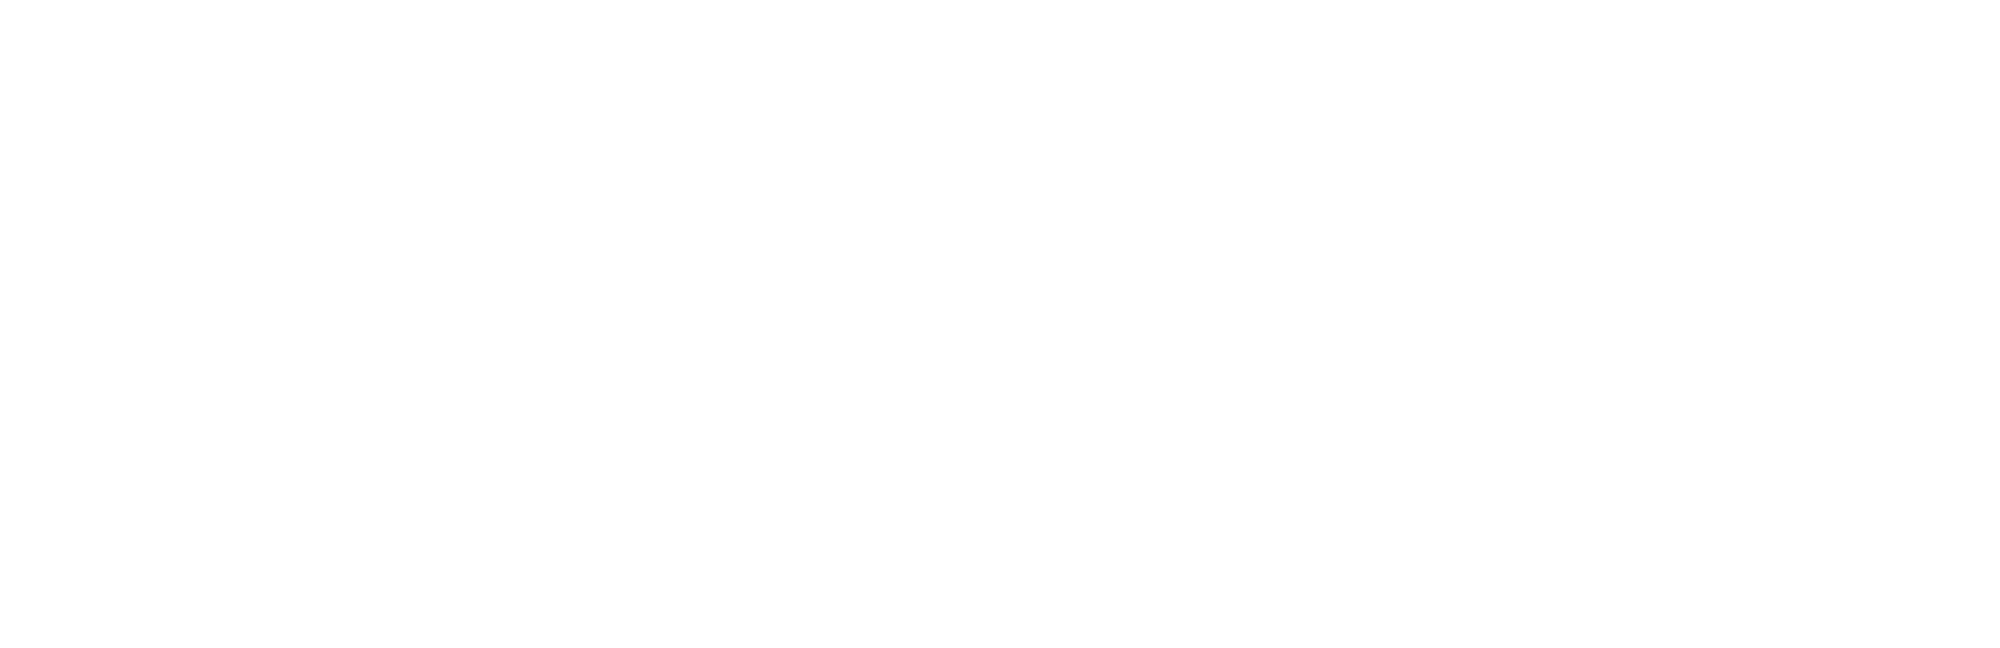 BMW_Weißgrau